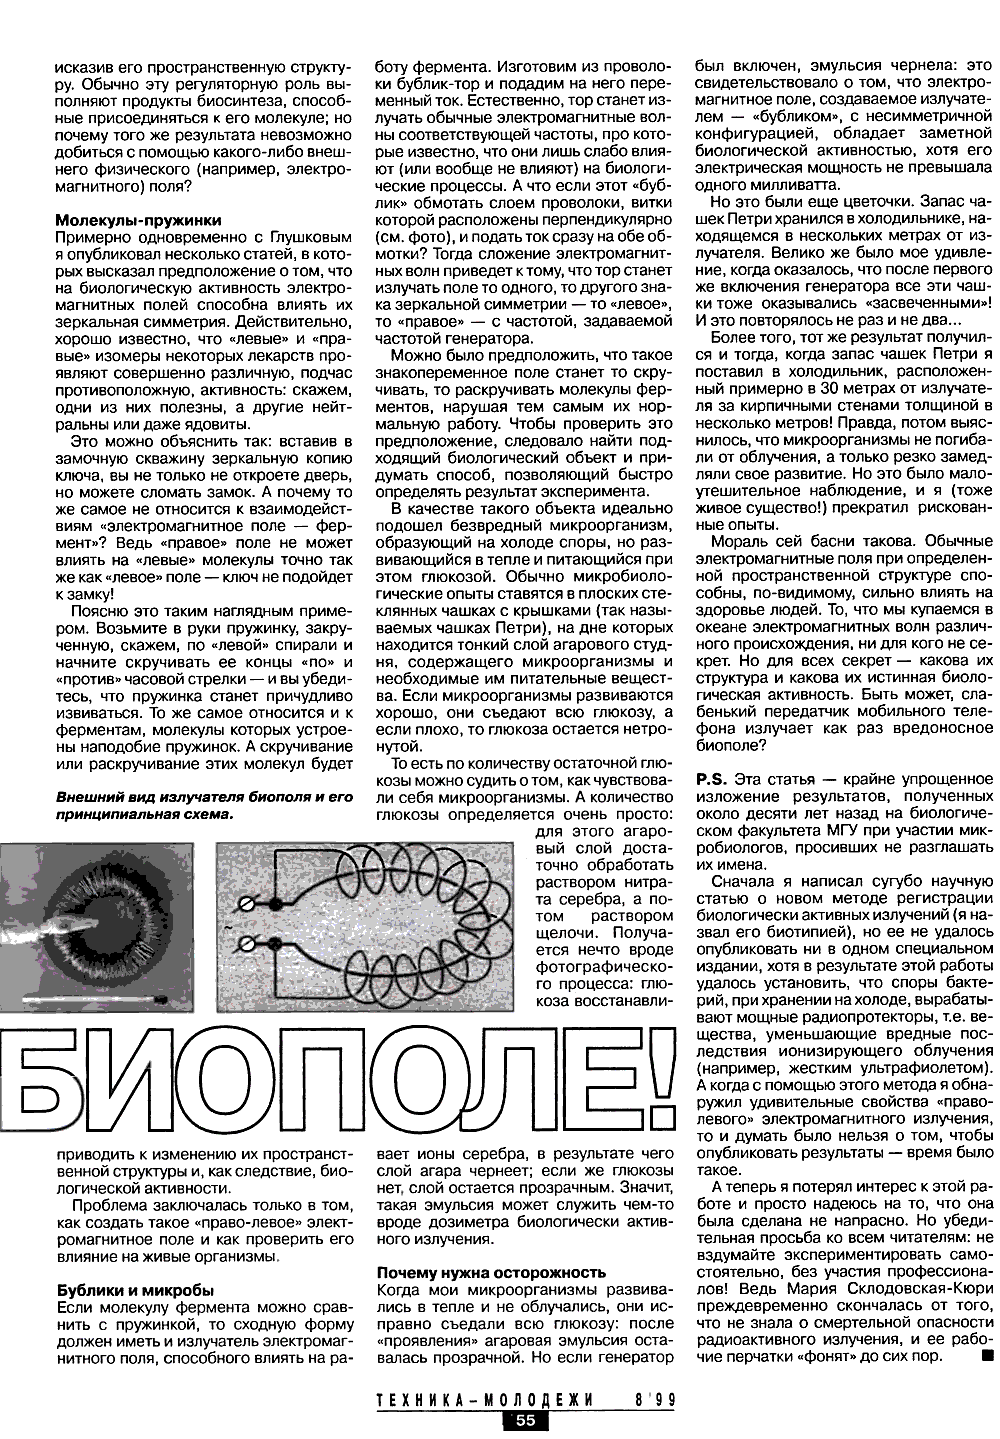 Осторожно — биополе. В. Жвирблис. Техника — Молодёжи, 1999, №8, с.54-55. Фотокопия №2